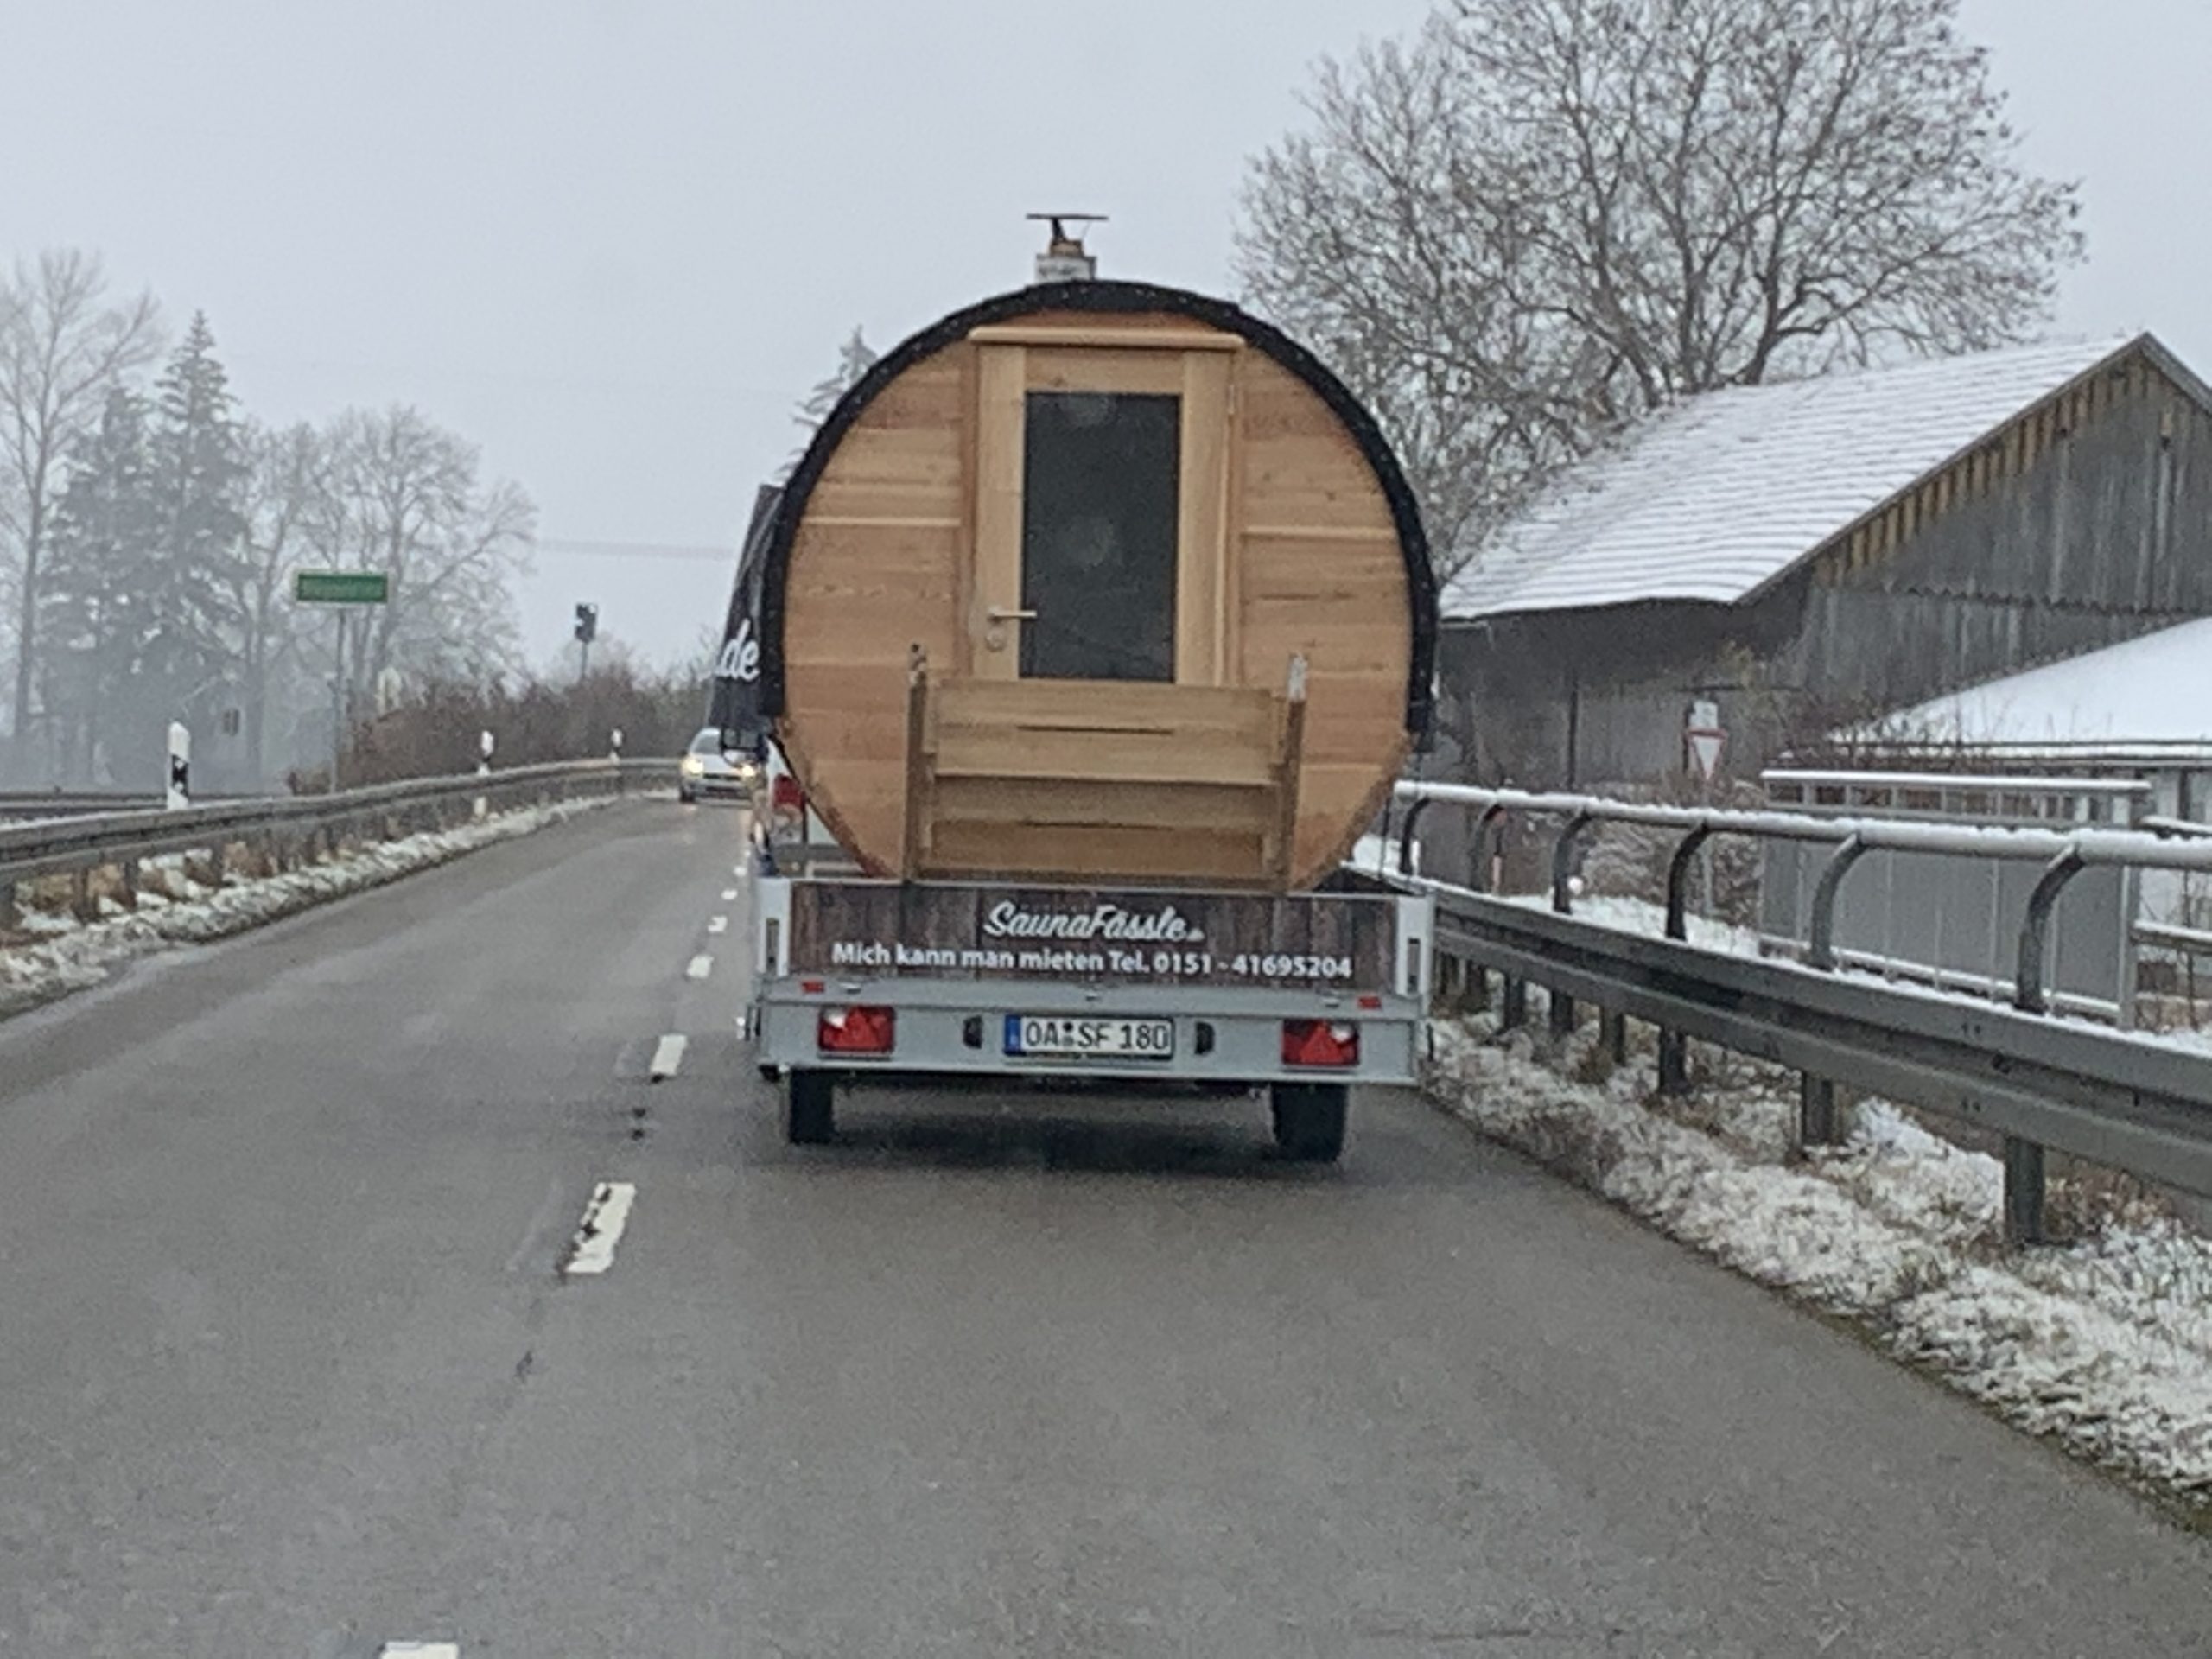 Saunafässle on the Road